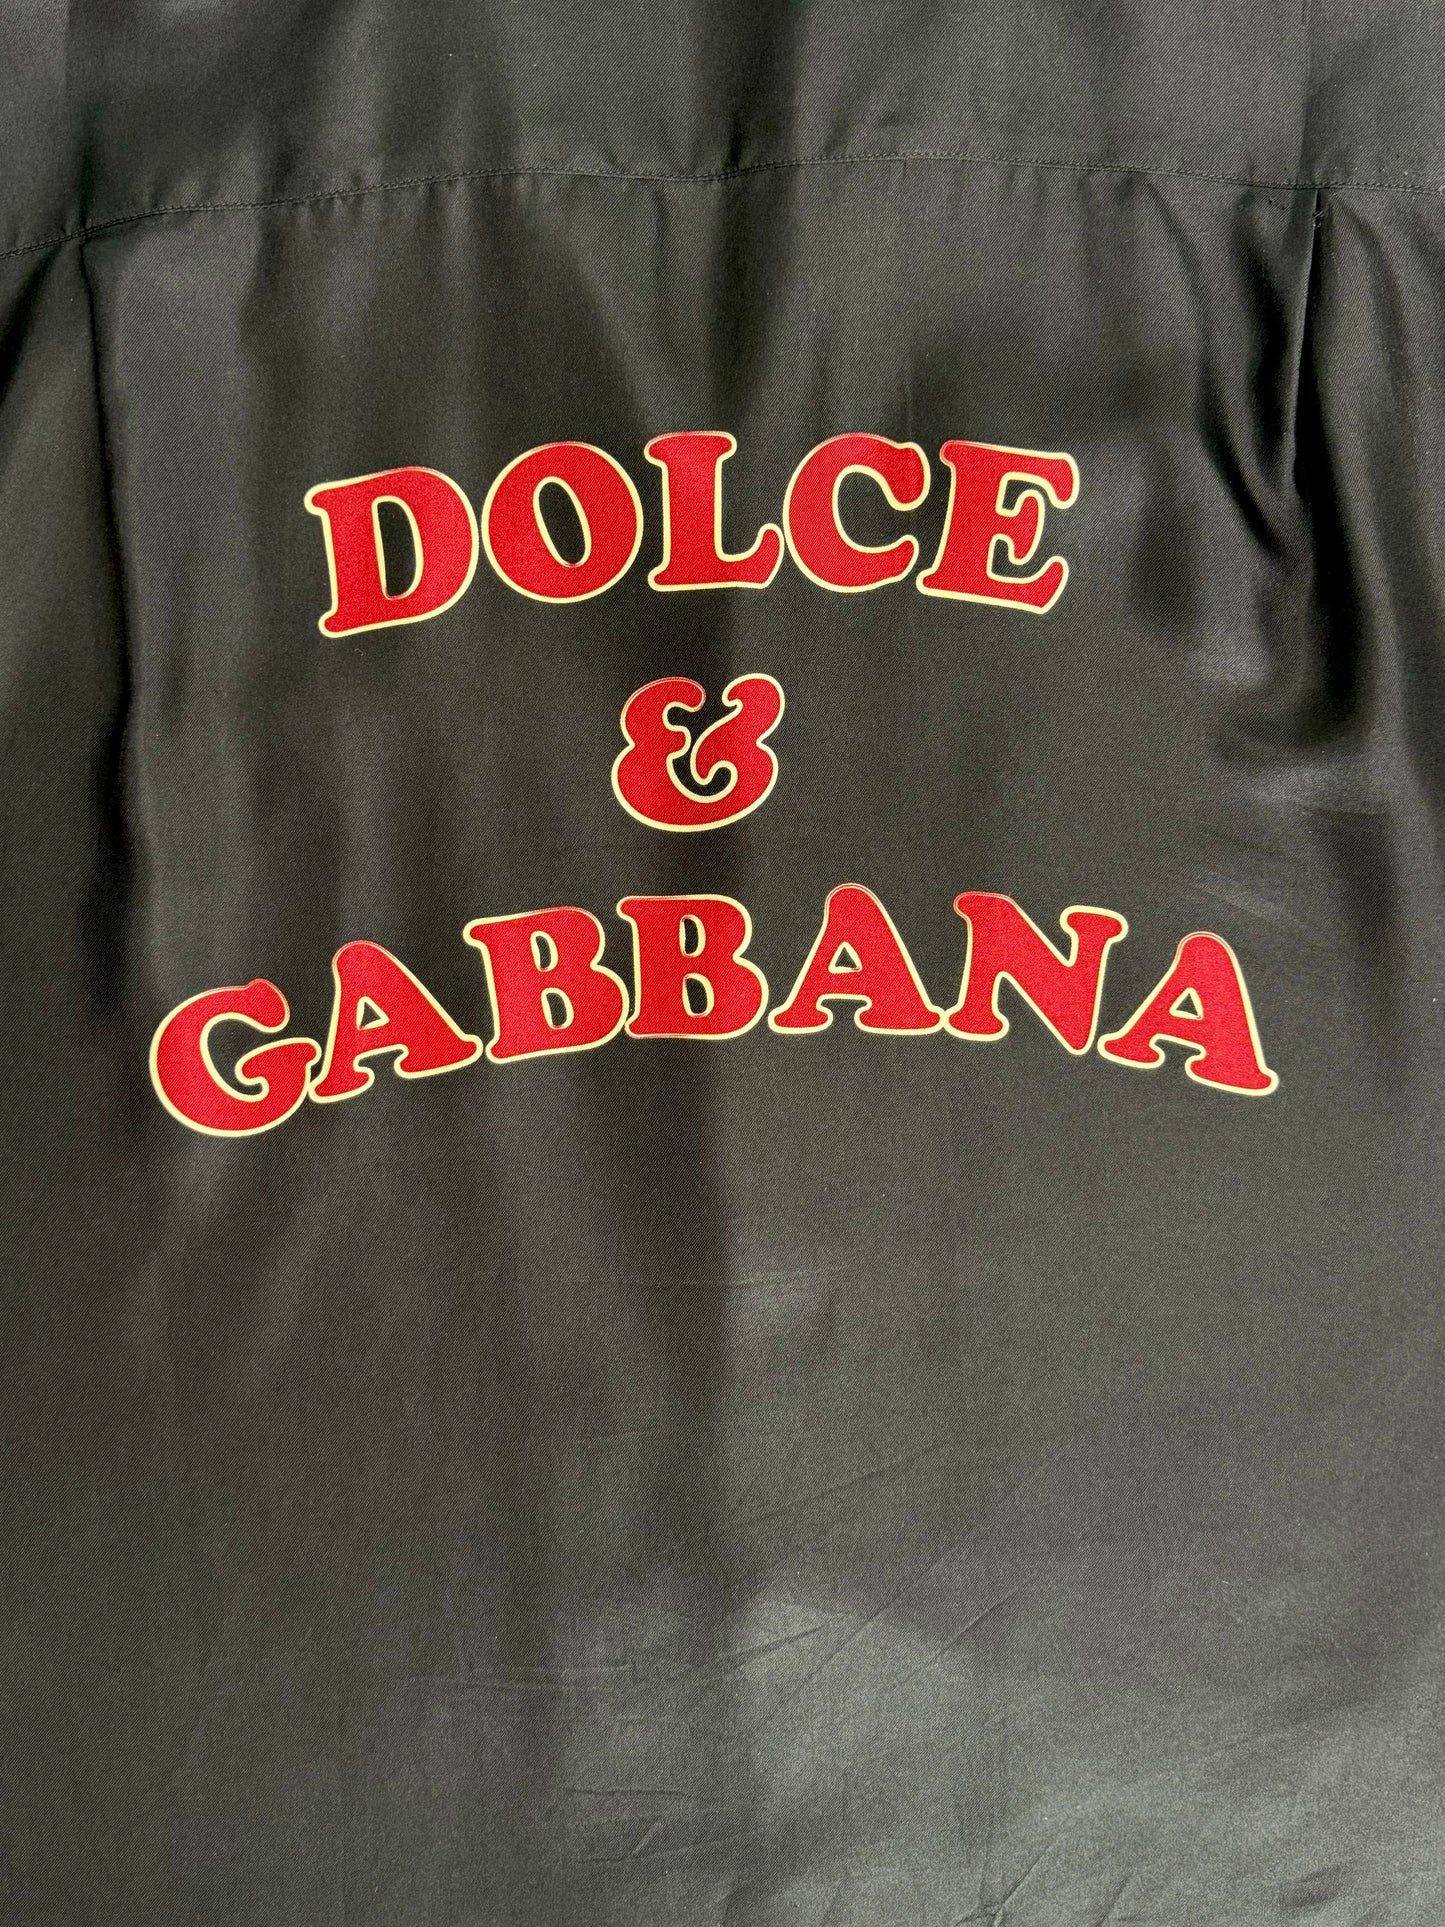 Dolce & Gabbana Silk Hawaii Pin Up Shirt